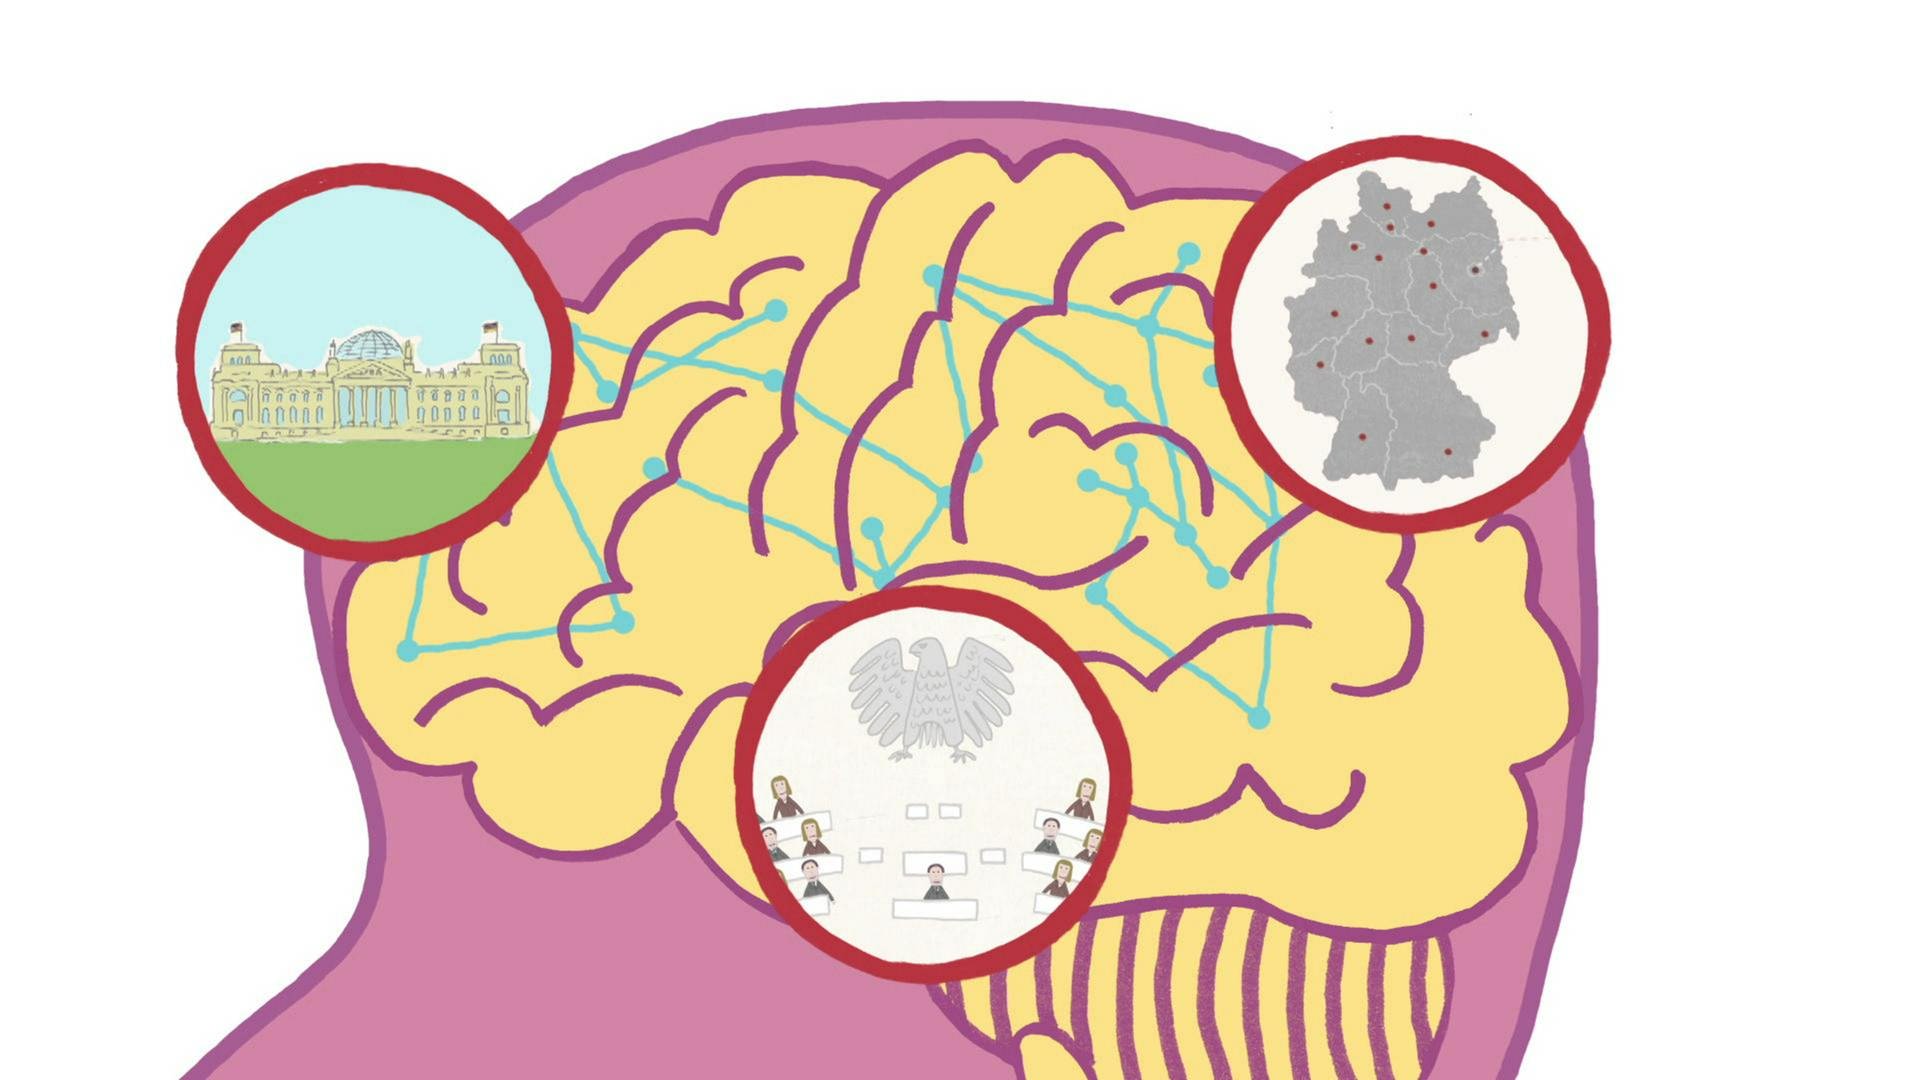 Grafik eines Gehirns mit kleinen Symbolen für das Gedächtnis. (Foto: WDR)